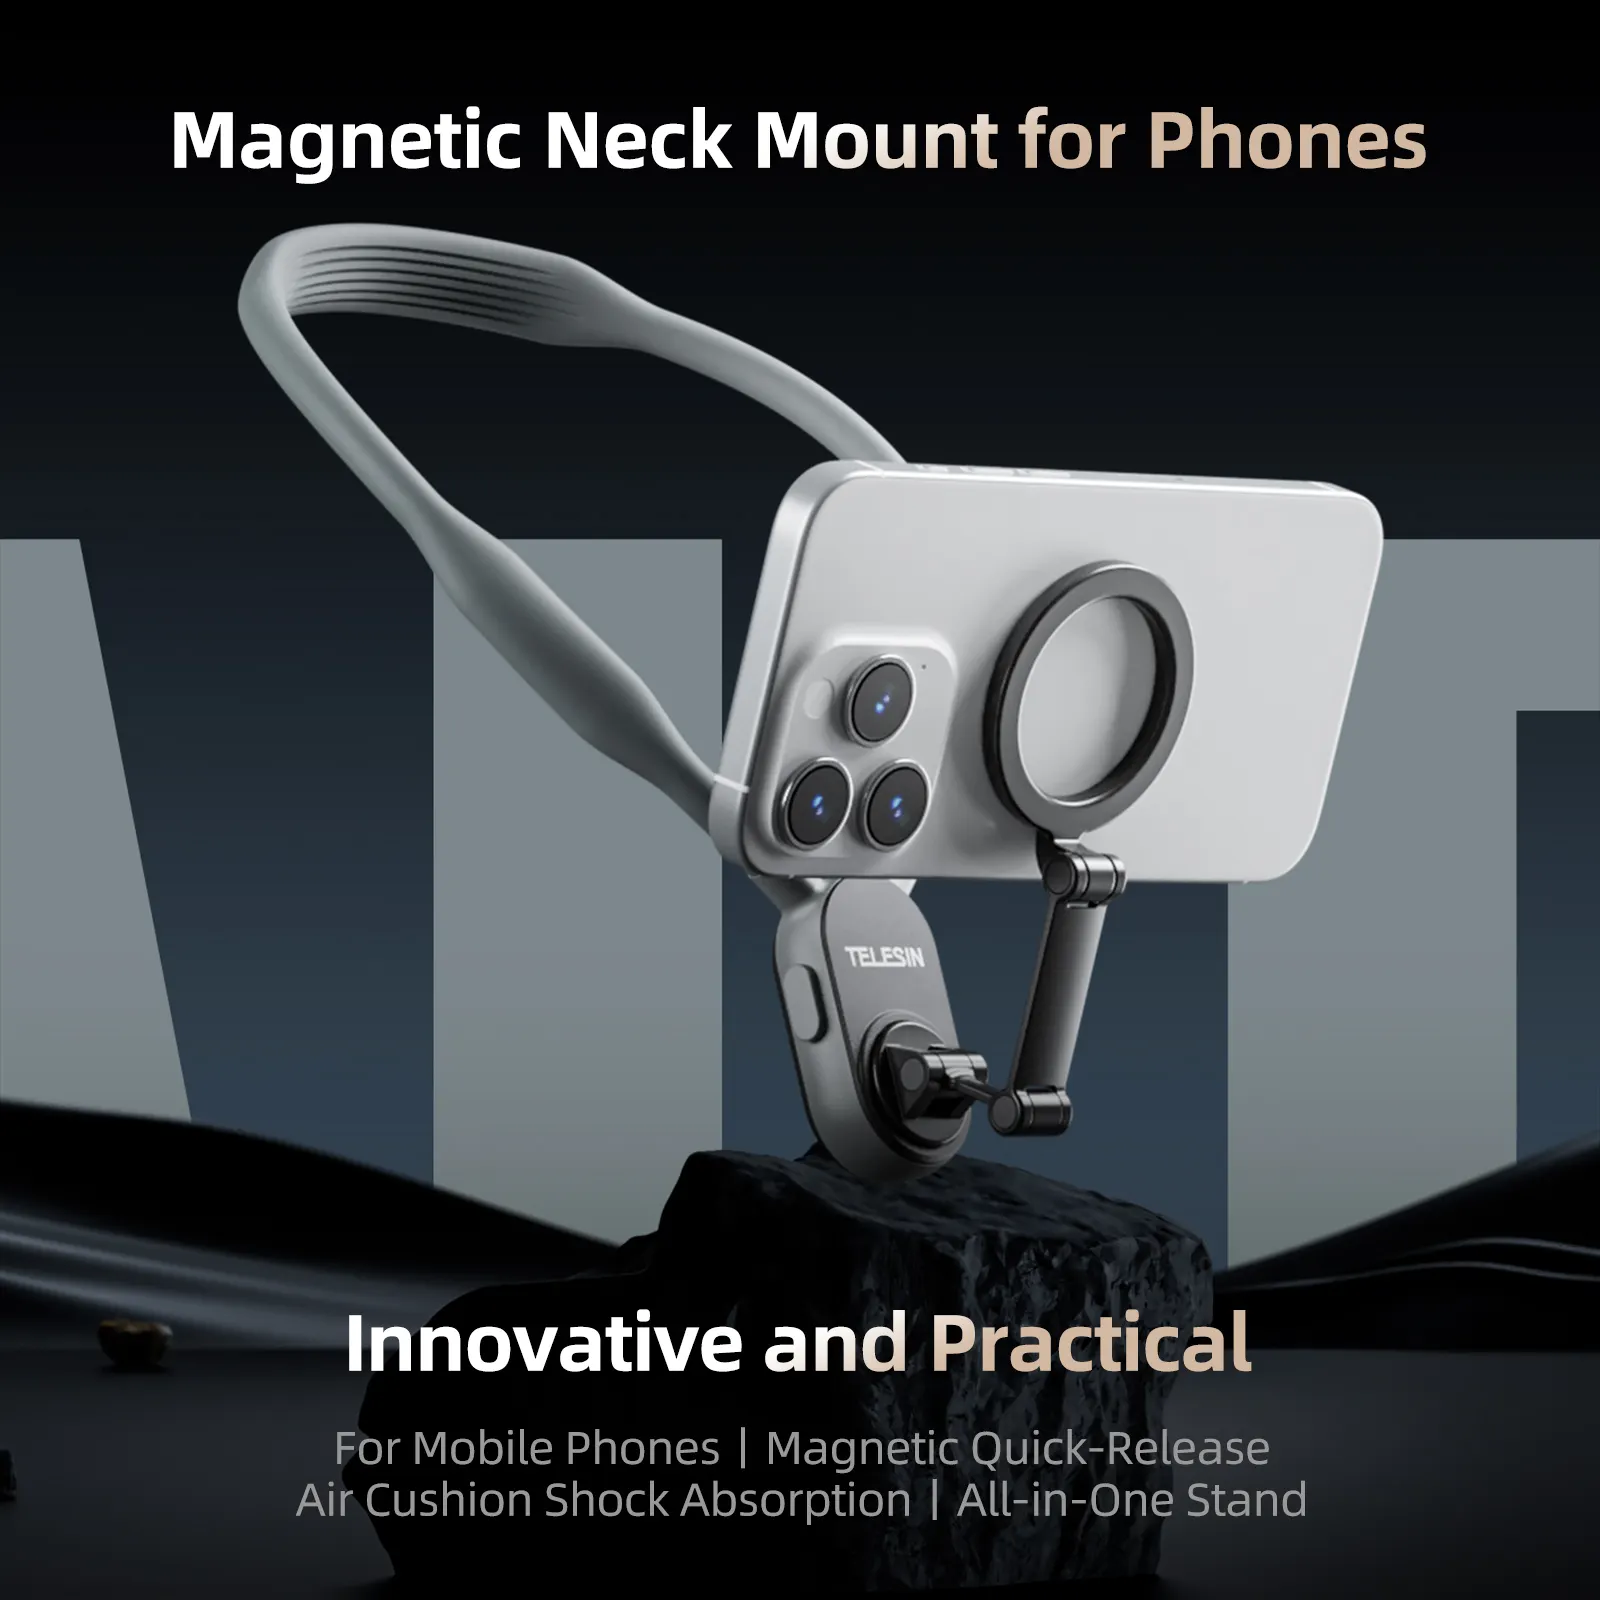 Telefon cep telefonları silikon manyetik boyun dağı için MNM 001 eller serbest çekim aksesuarları